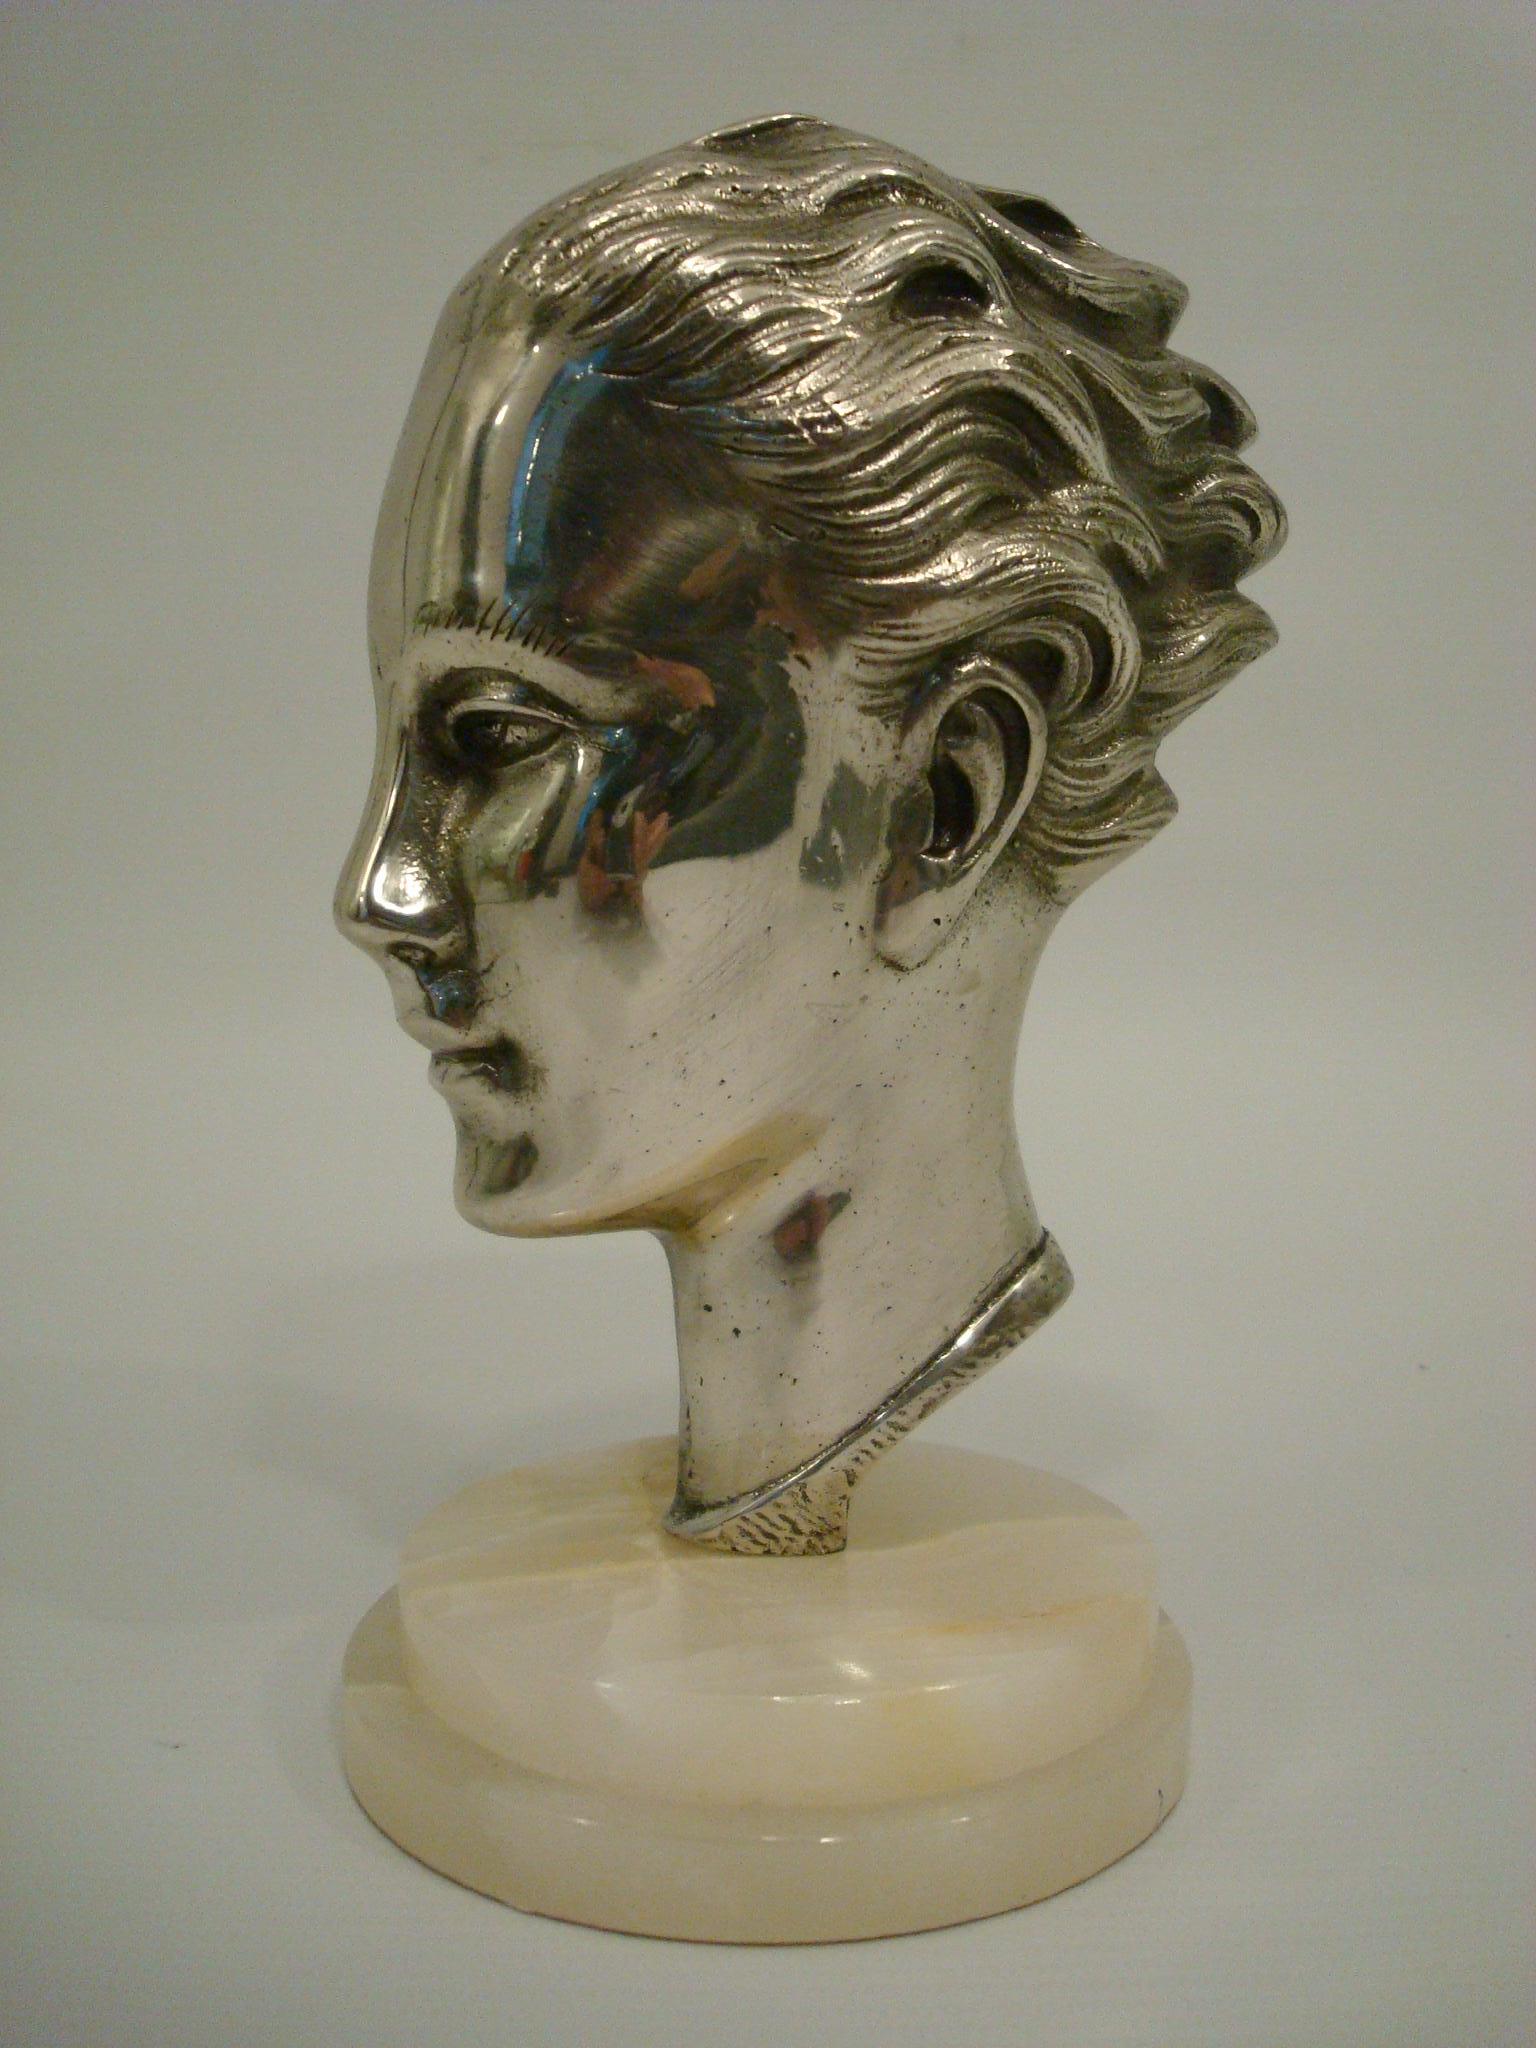 Art Deco / Midcentury Versilberte Bronzebüste - Frankreich 1930er Jahre.
Kopf aus versilberter Bronze auf Onyxmarmor montiert.
Sehr schöne Skulptur, perfekt für einen Schreibtisch oder einen Beistelltisch. Kann auch als Briefbeschwerer verwendet